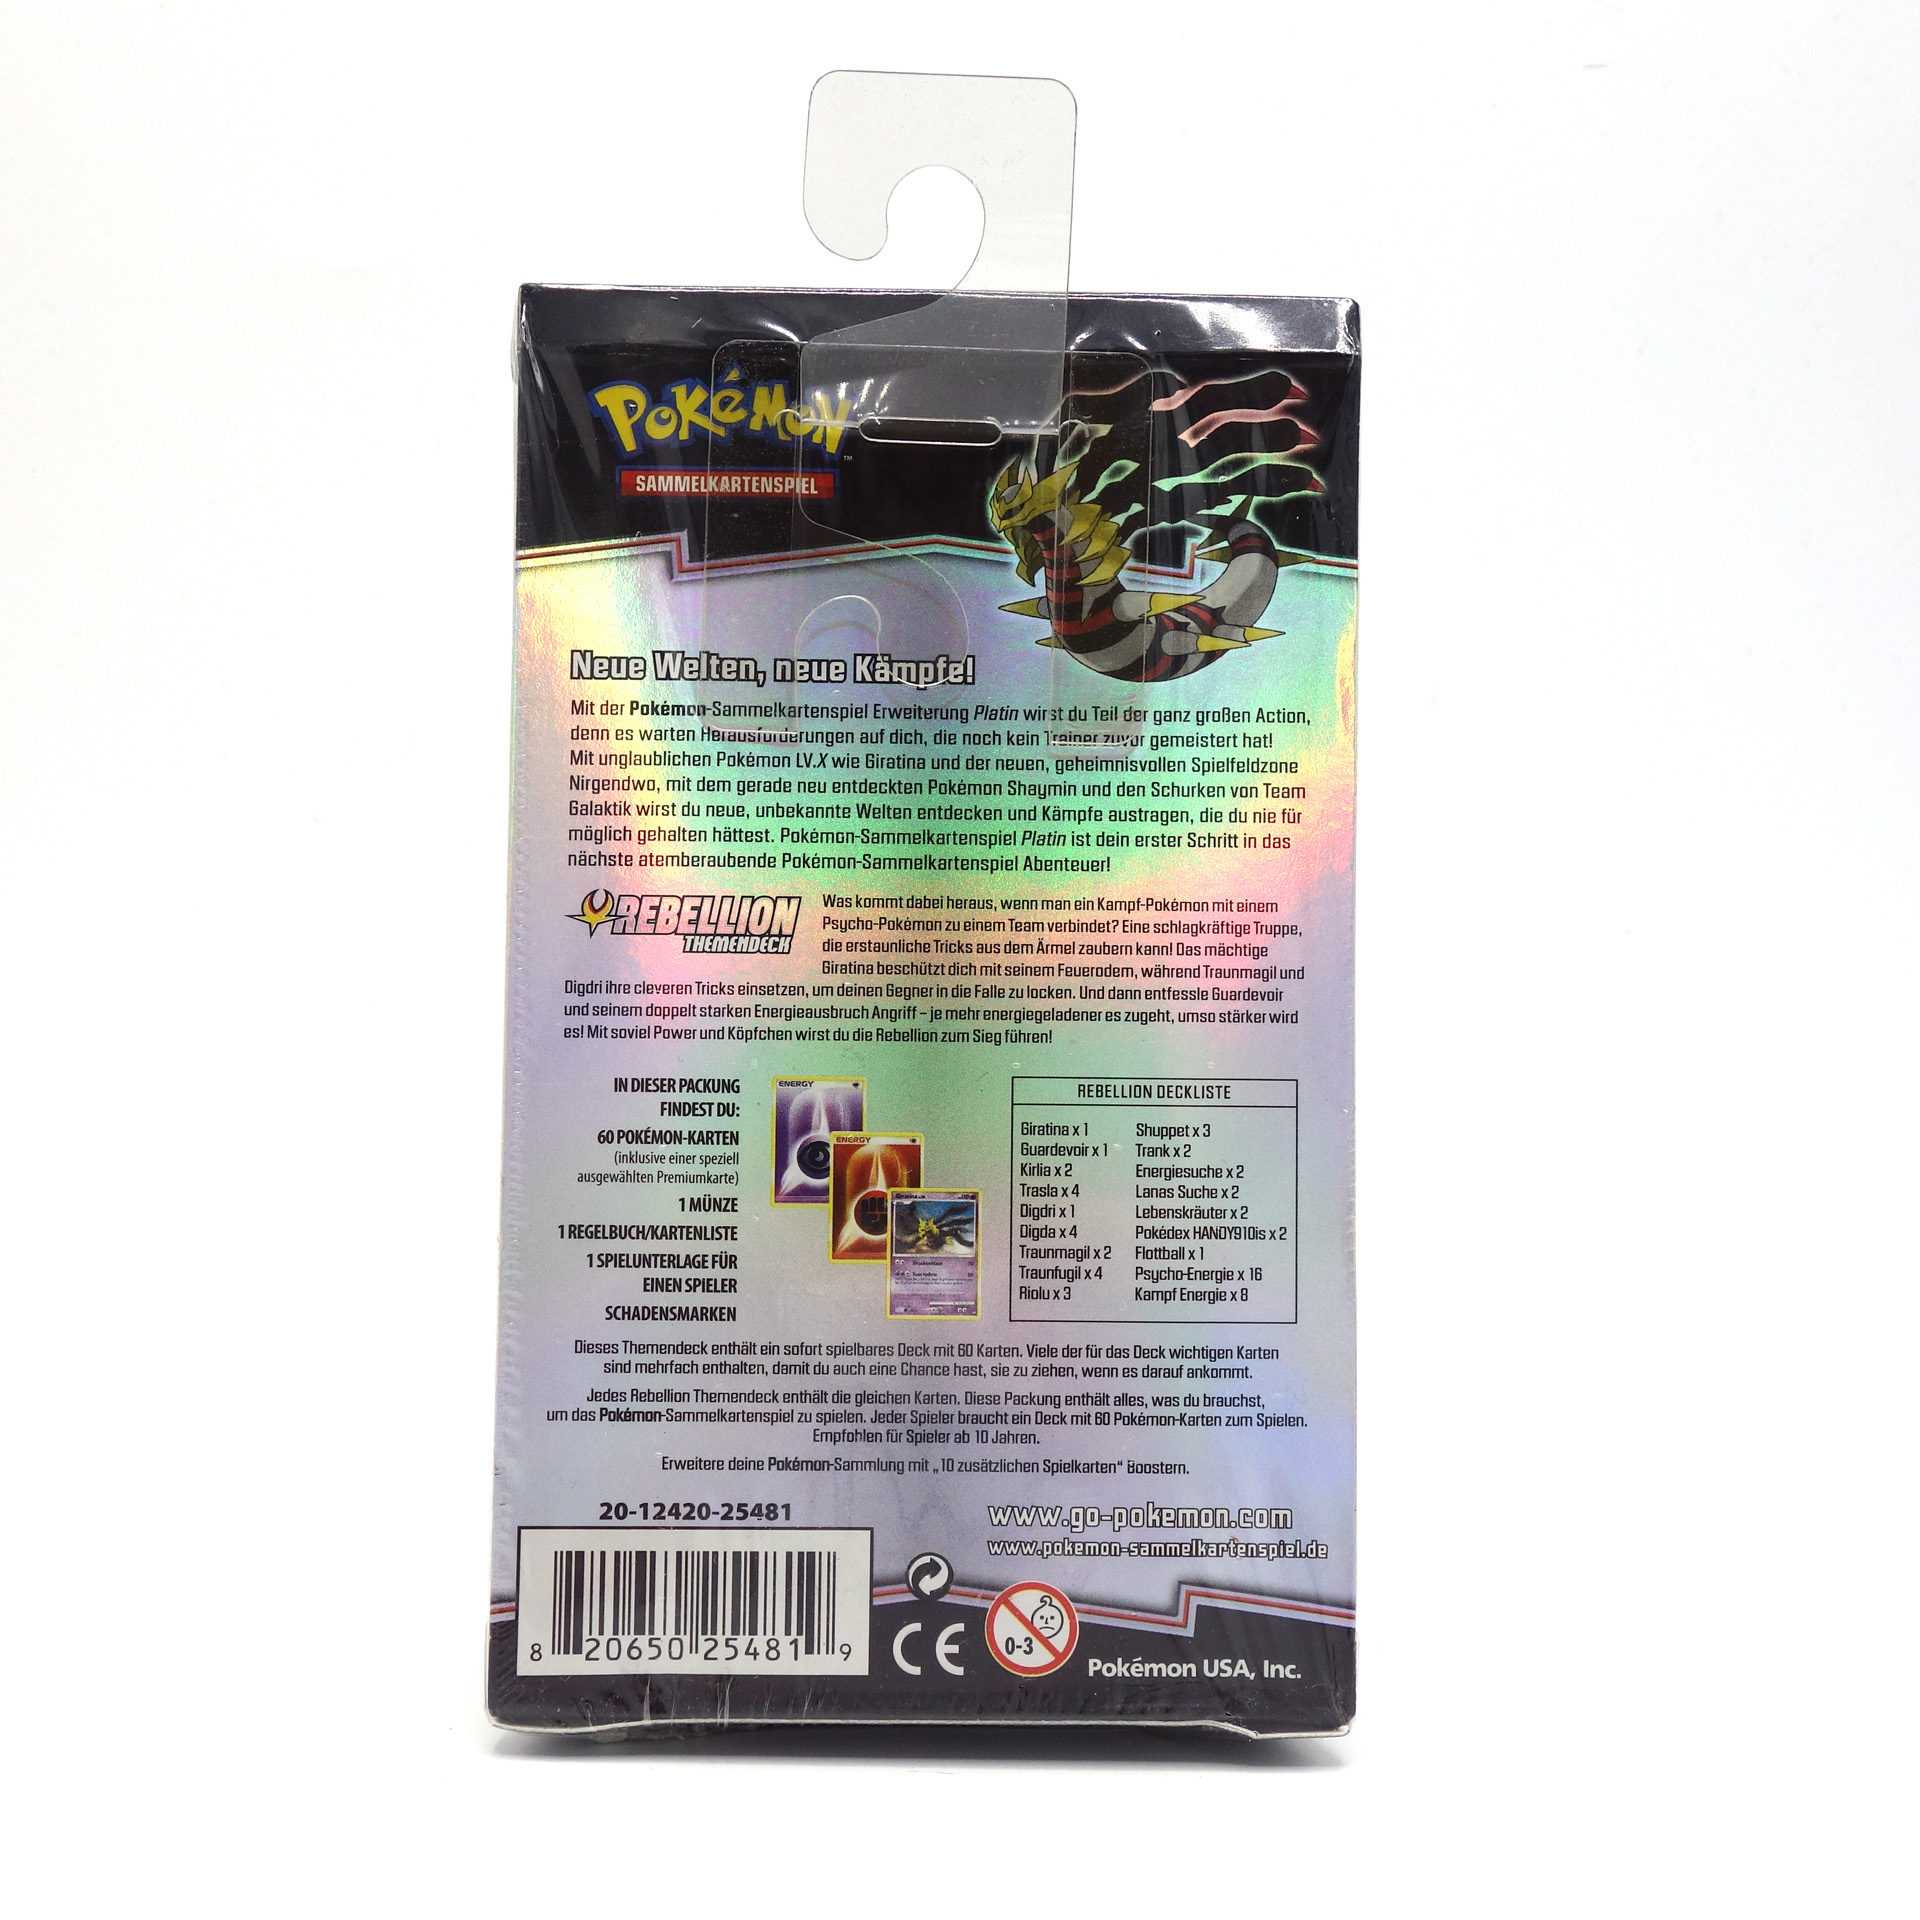 Pokémon (Sammelkartenspiel) Platin Rebellion Themendeck (OVP) 2009